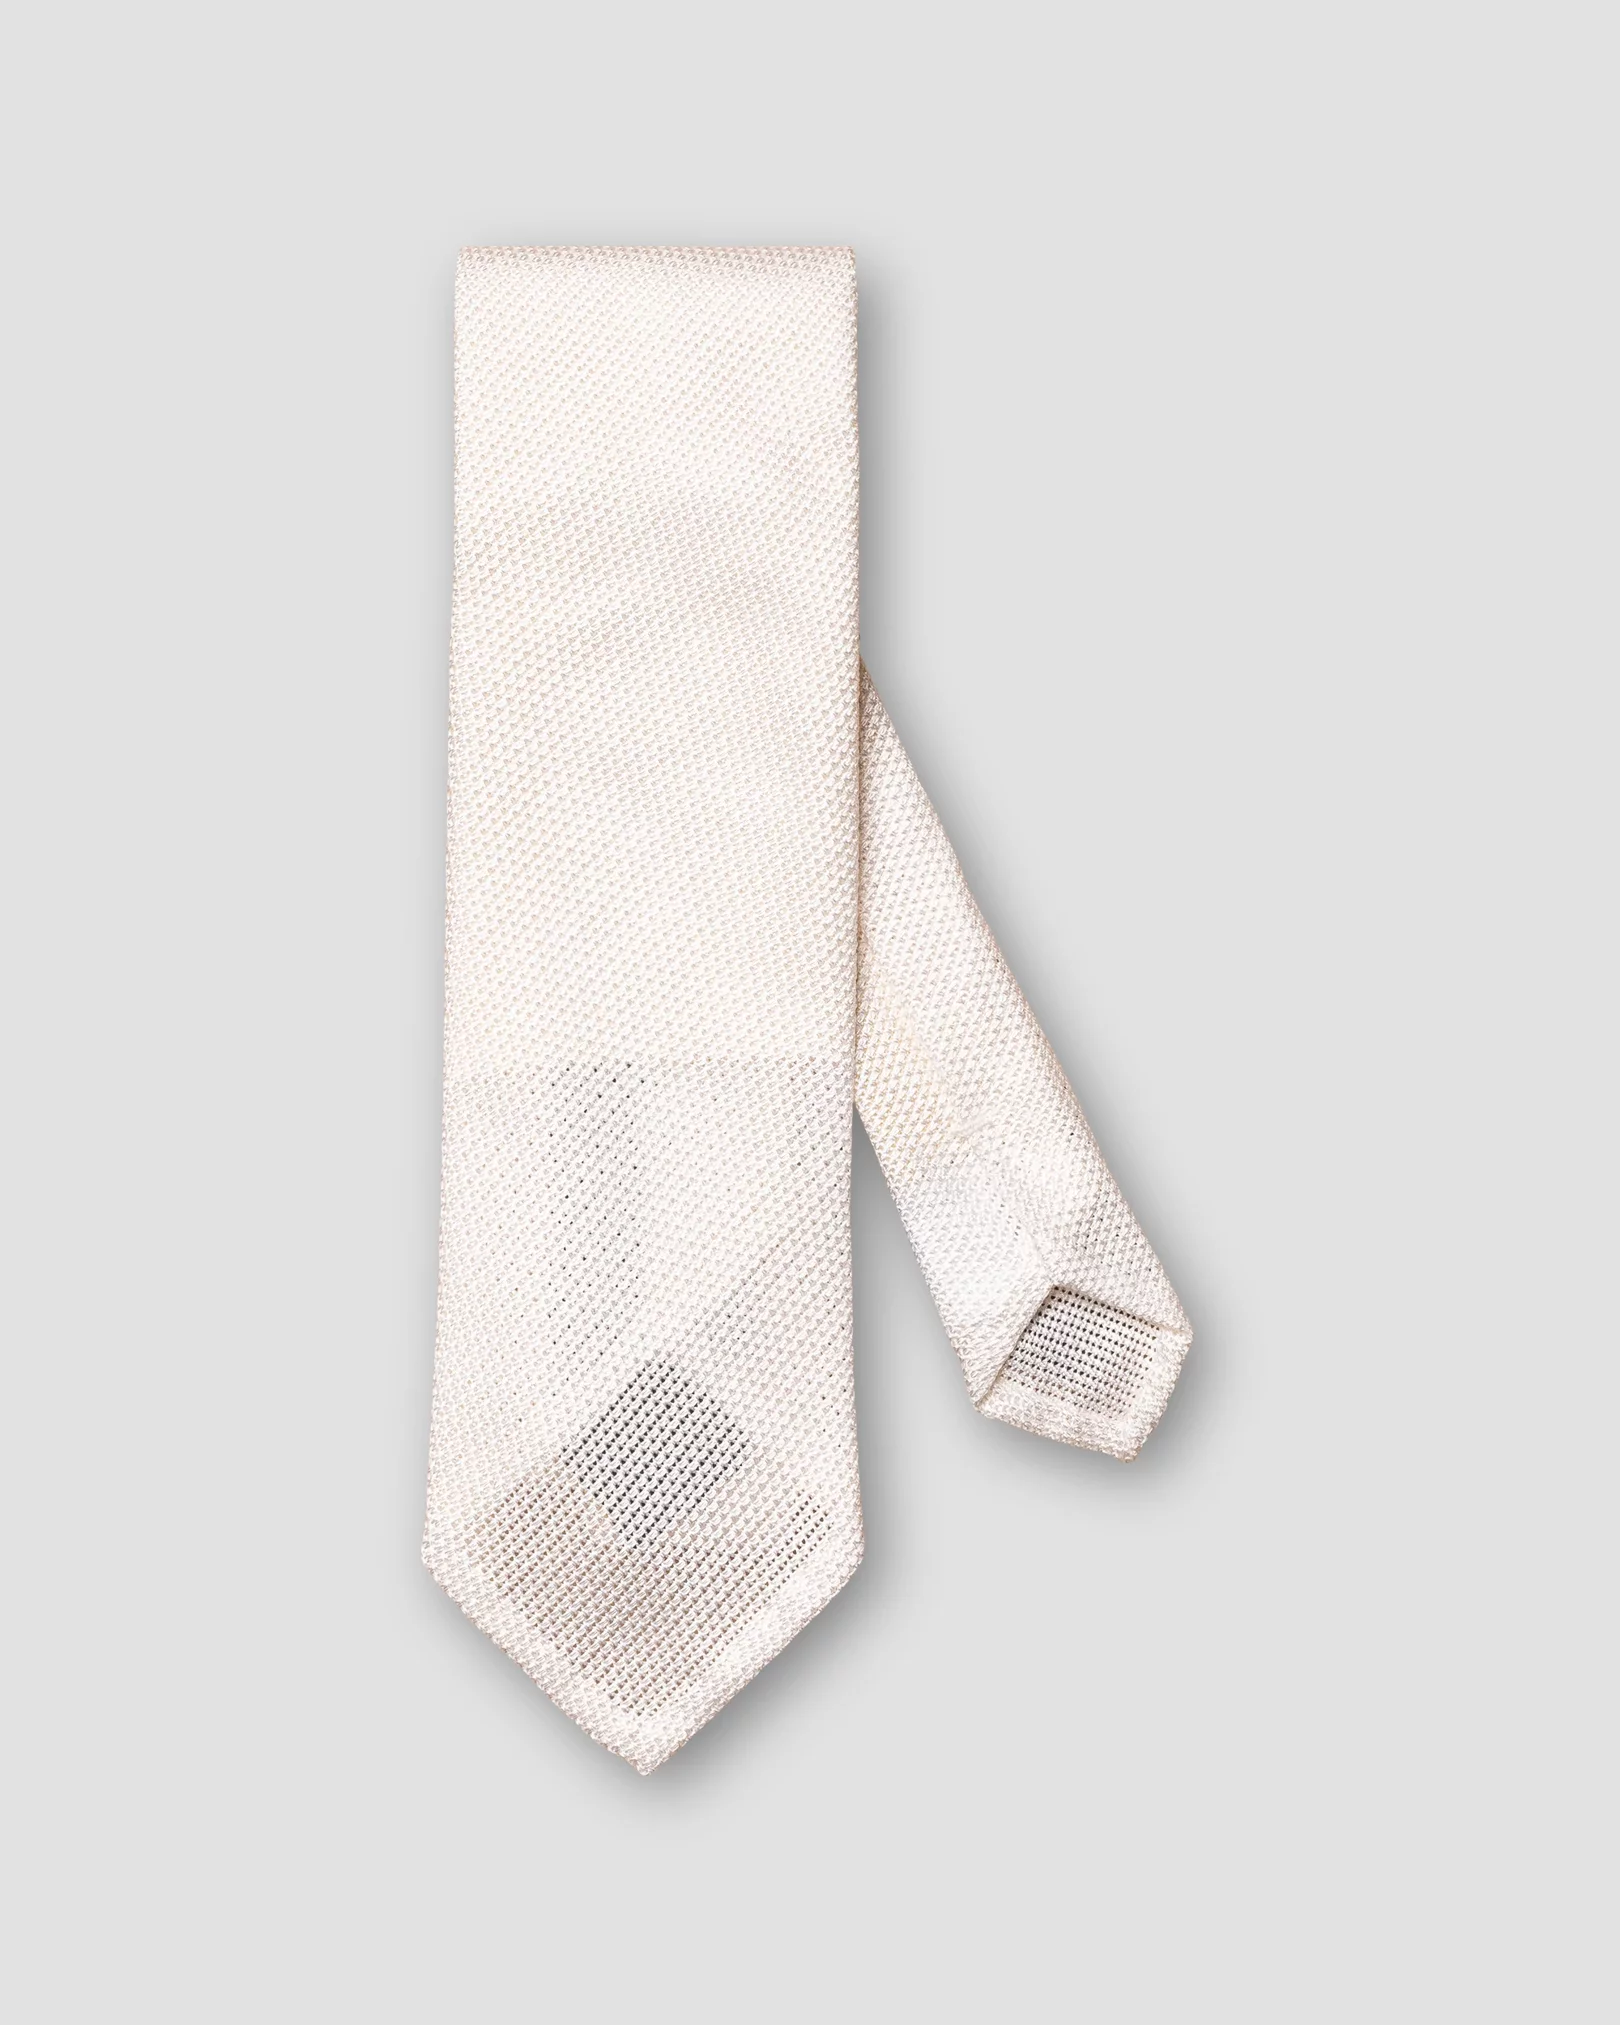 Weiße handgemachte Krawatte aus Garza Fina-Grenadine